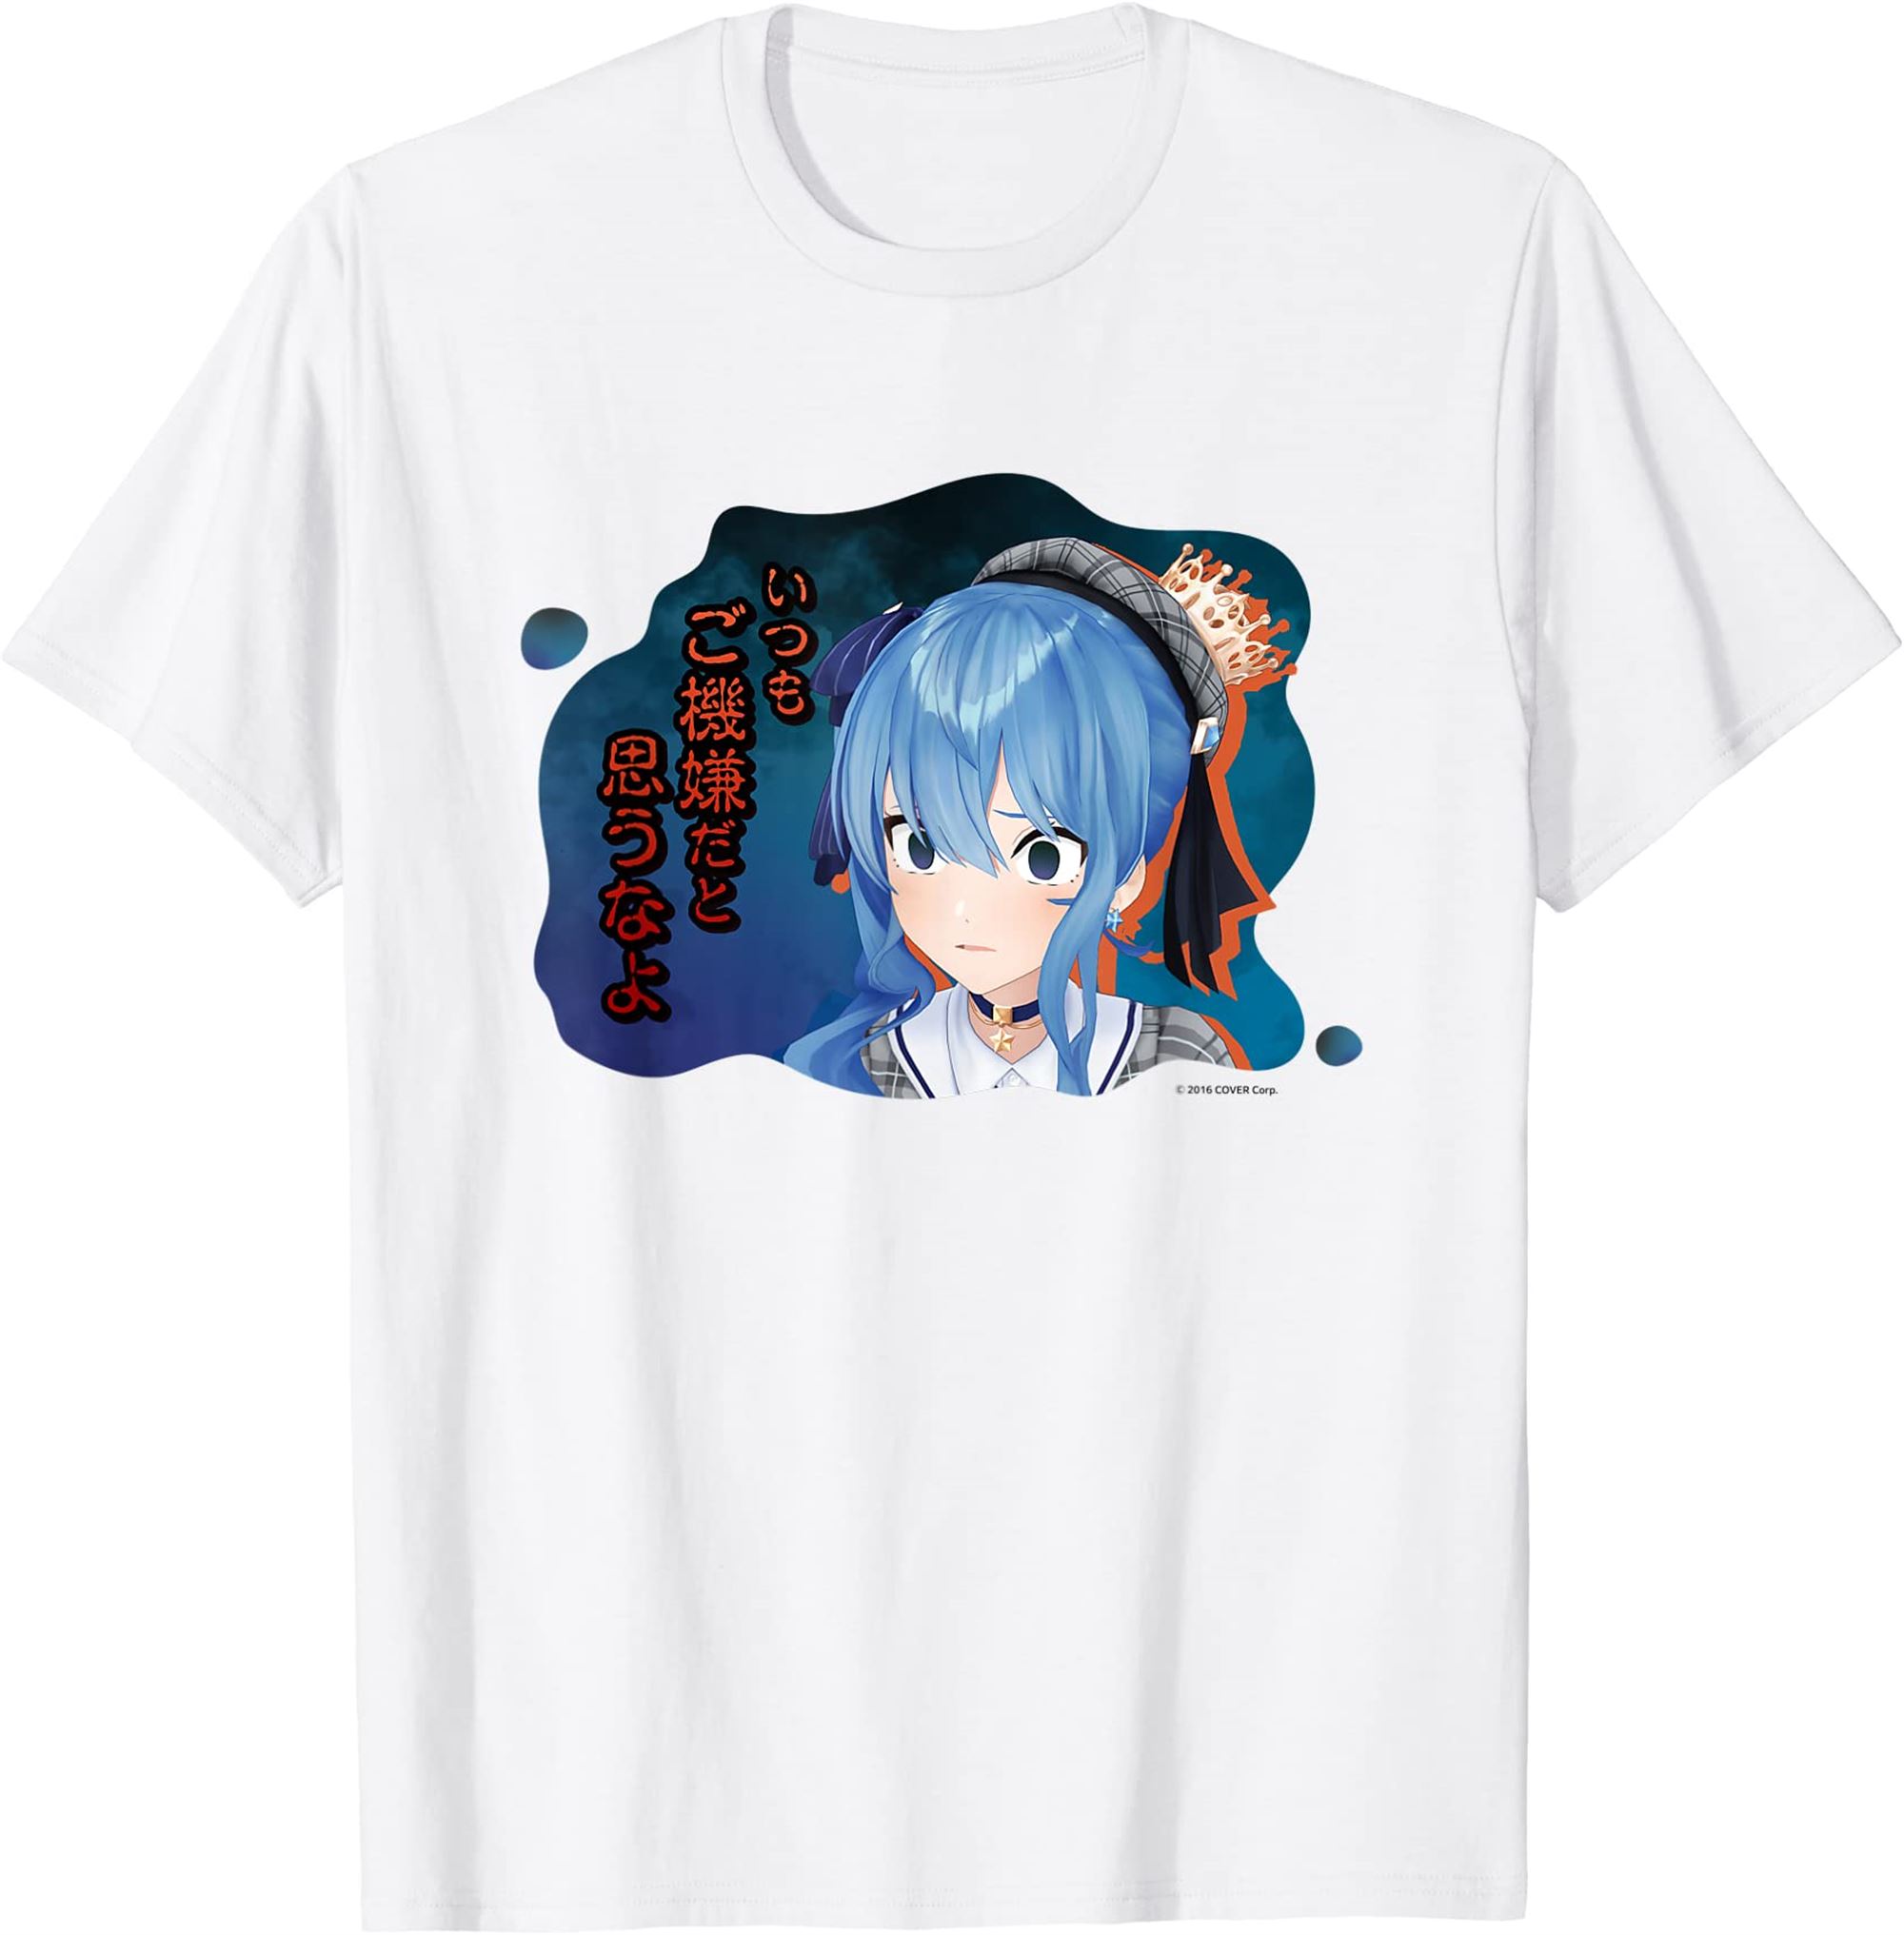 【hoshimachi Suisei】hologura Famous Scene T-shirt Full Size Up To 5xl